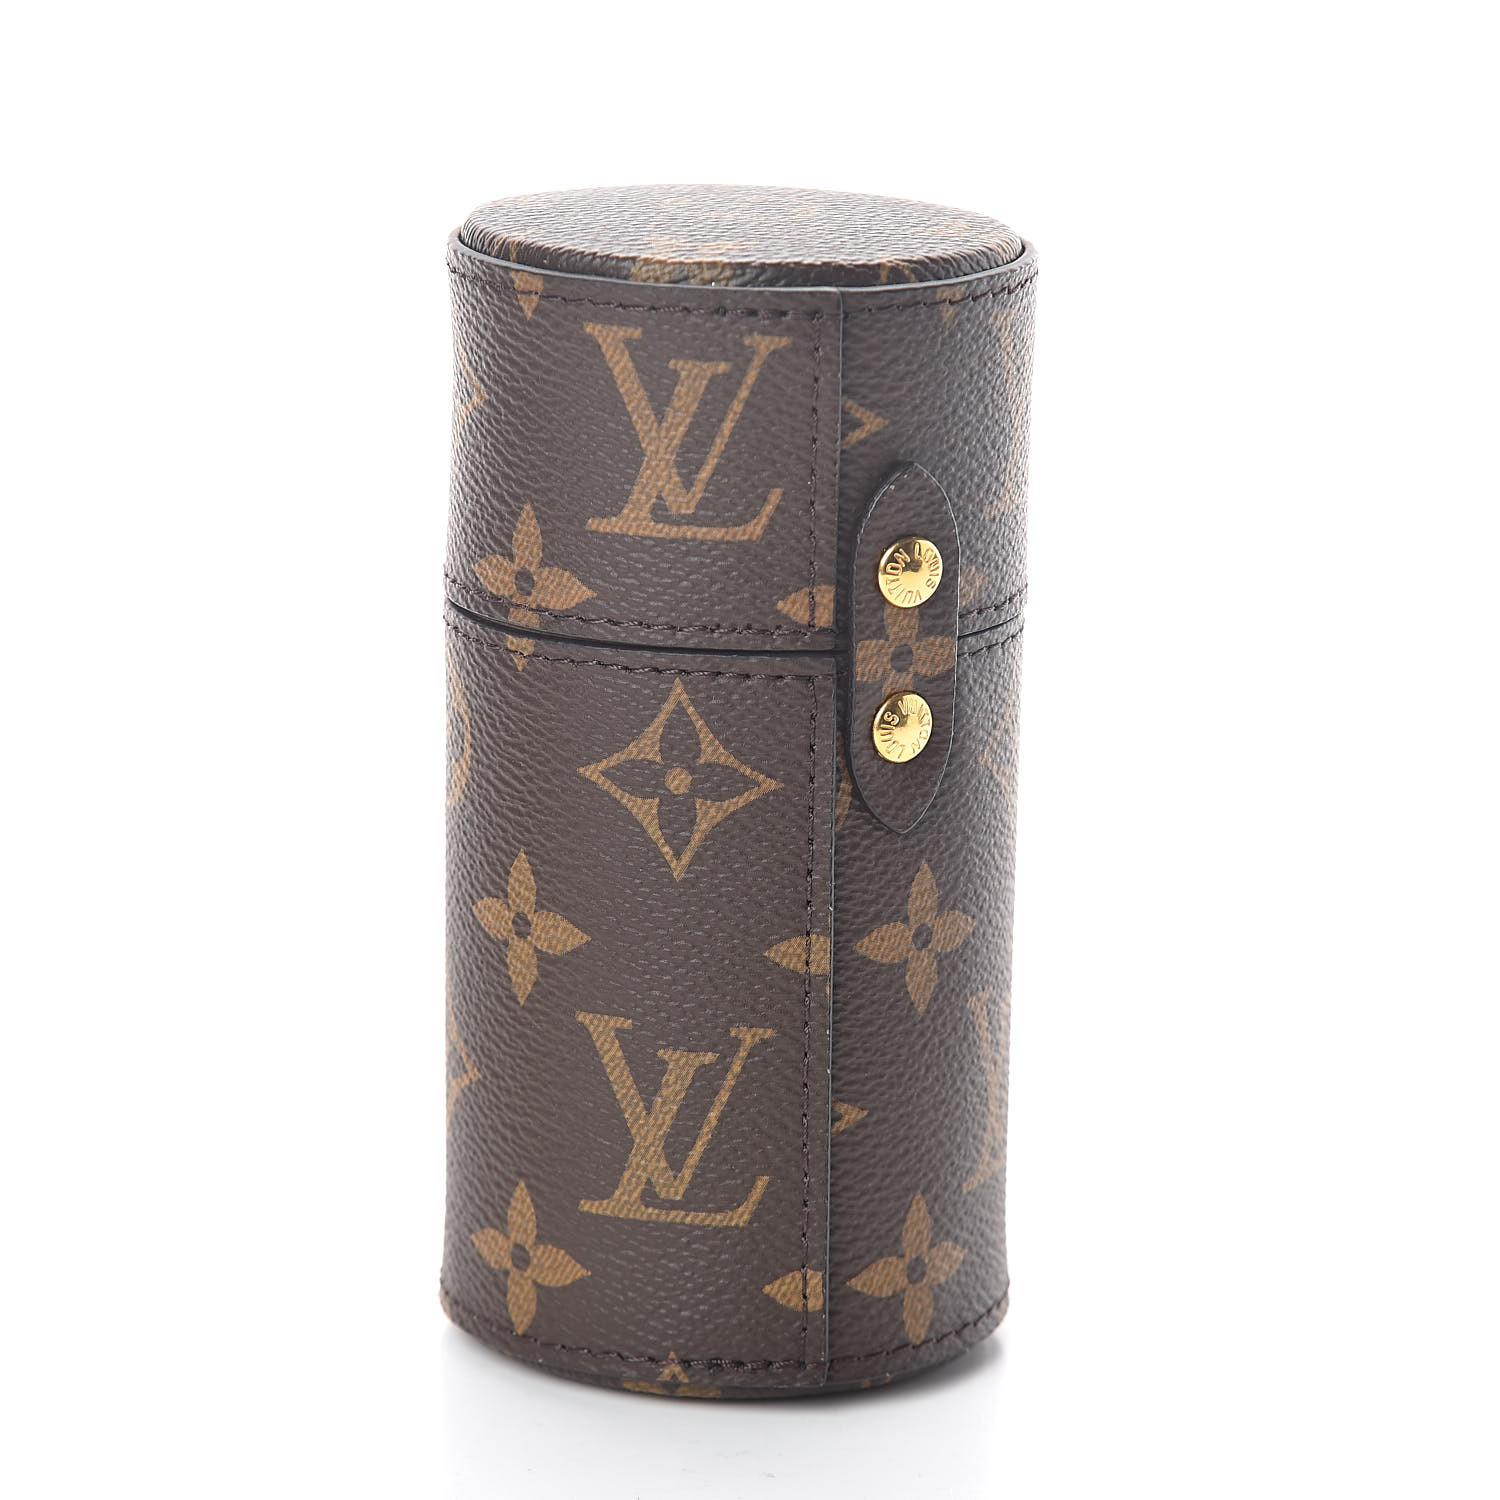 Louis Vuitton 1928 Nécessaire de Voyage — Travel goods